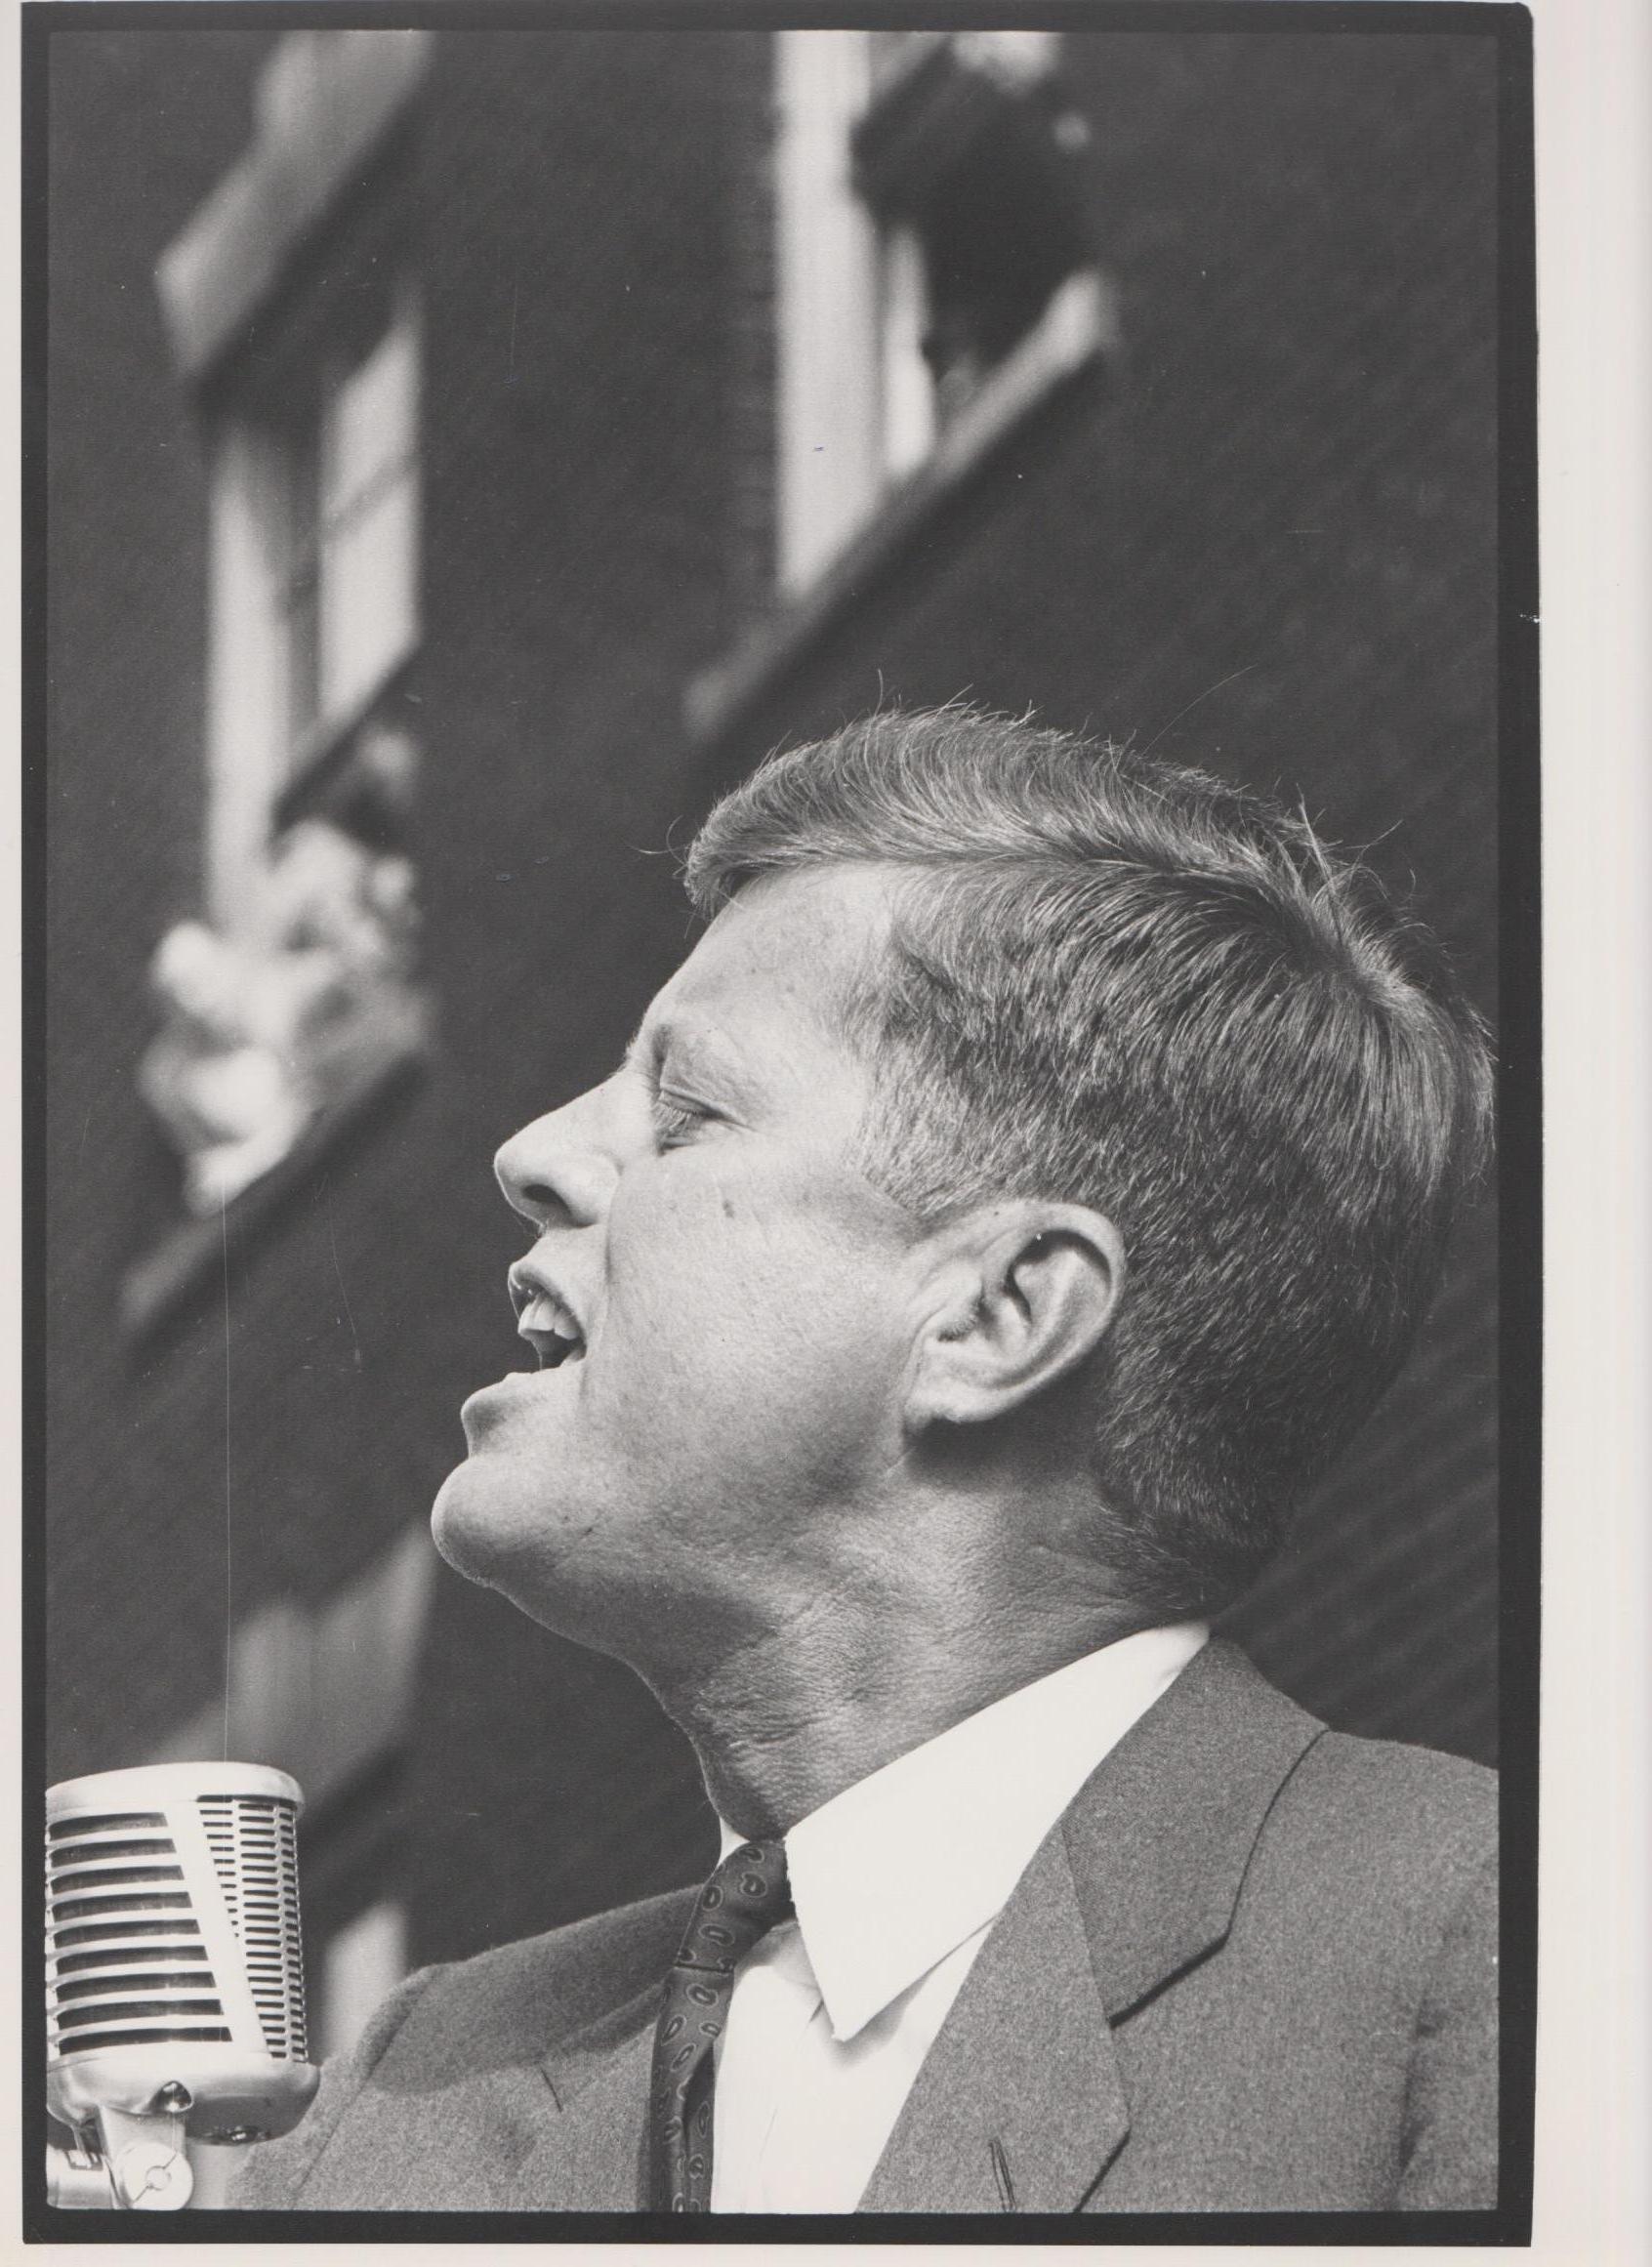 JFK speaking - John F. Kennedy Campagne électorale 1960